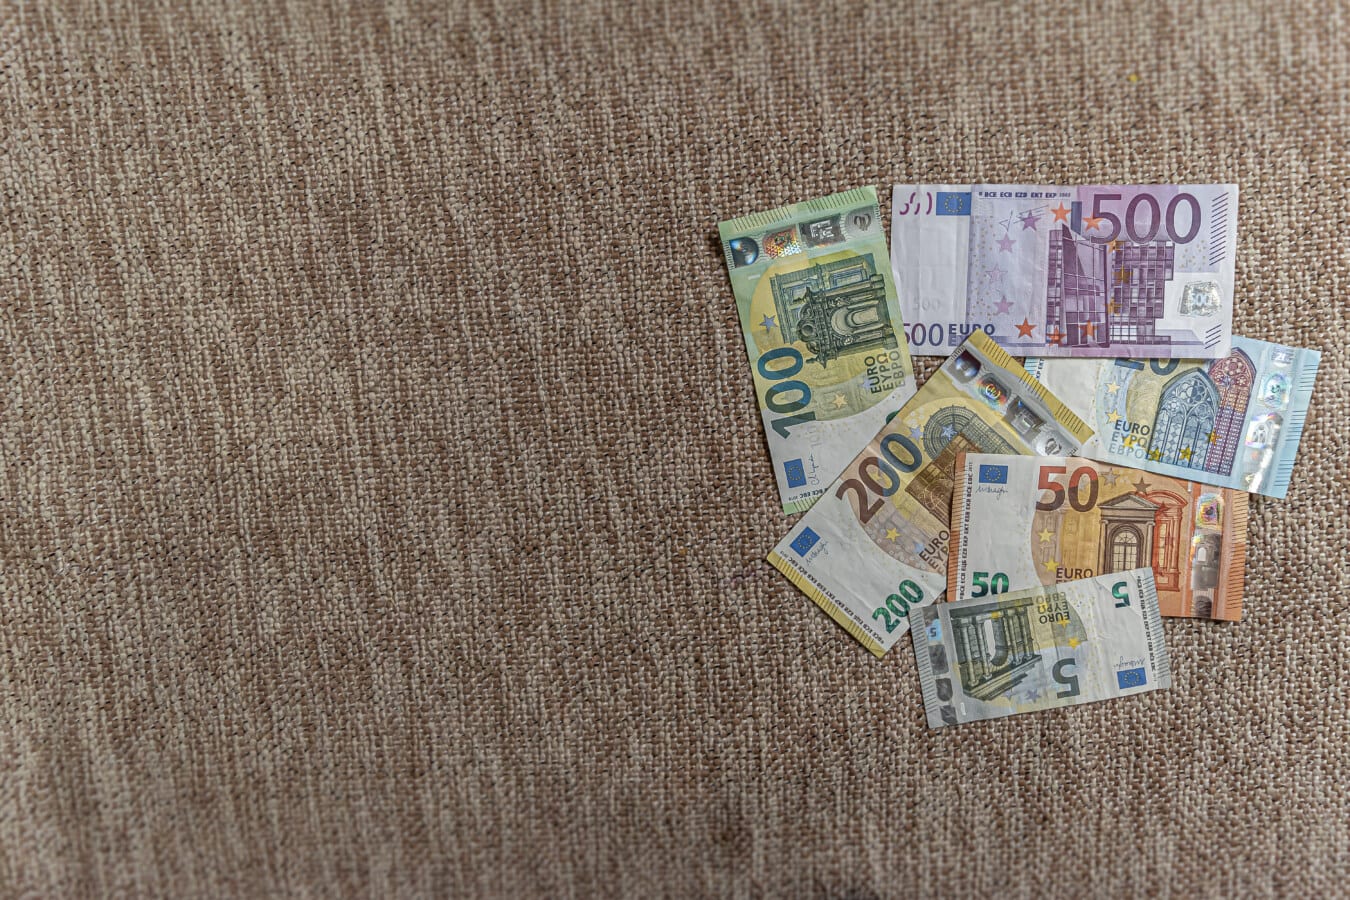 Ekonominin büyümesini gösteren euro (€) kağıt banknot yığını